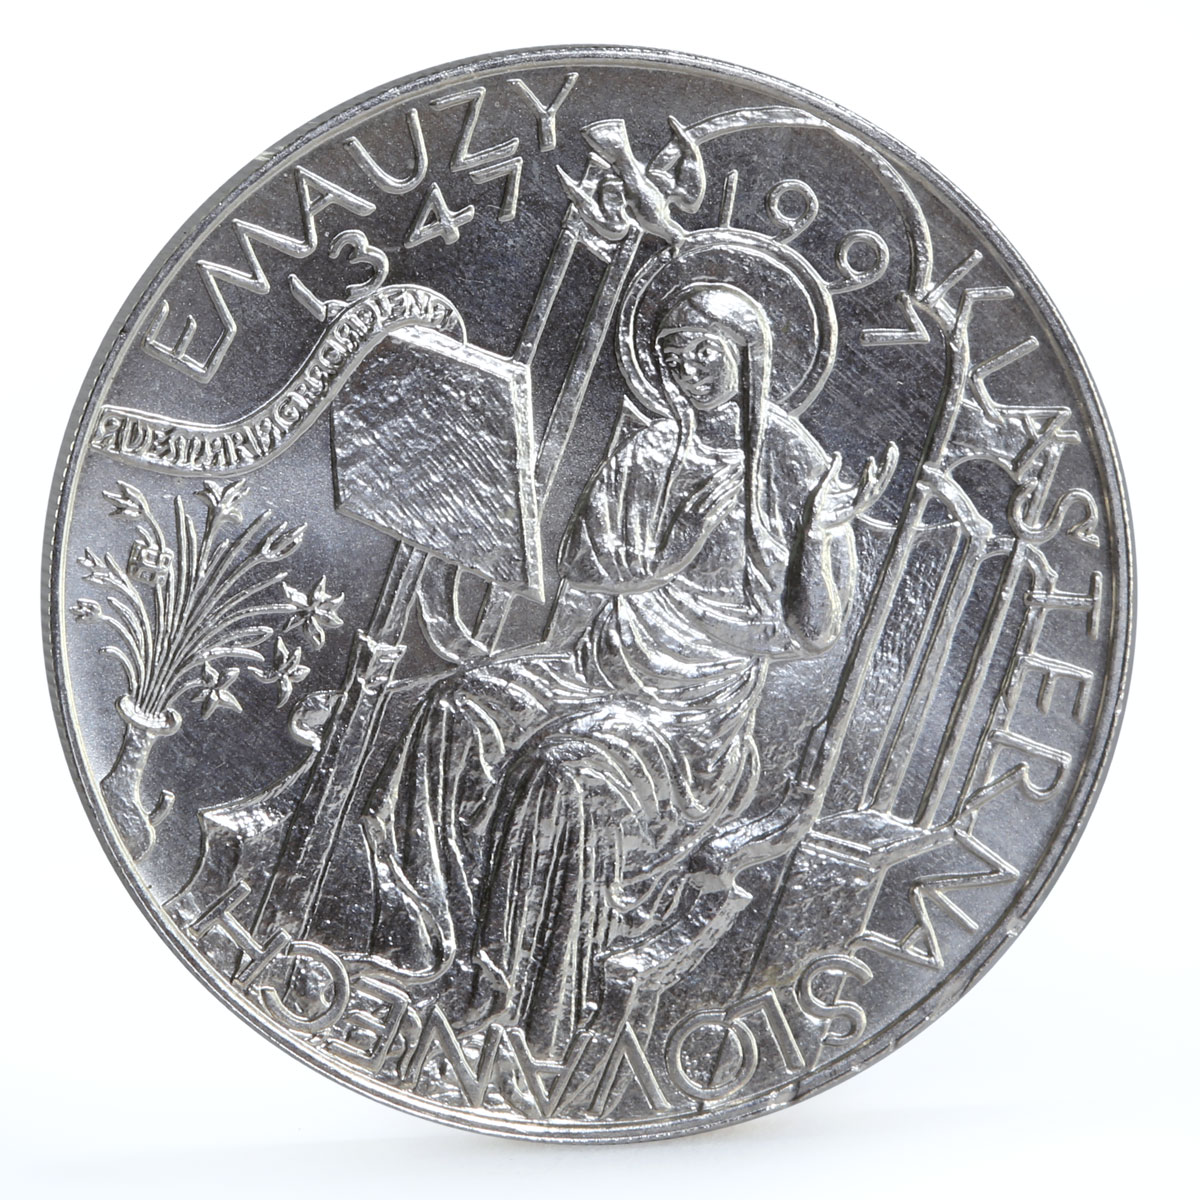 Czech Republic 200 korun Slovanech - Emauzy Cathedral Church silver coin 1997